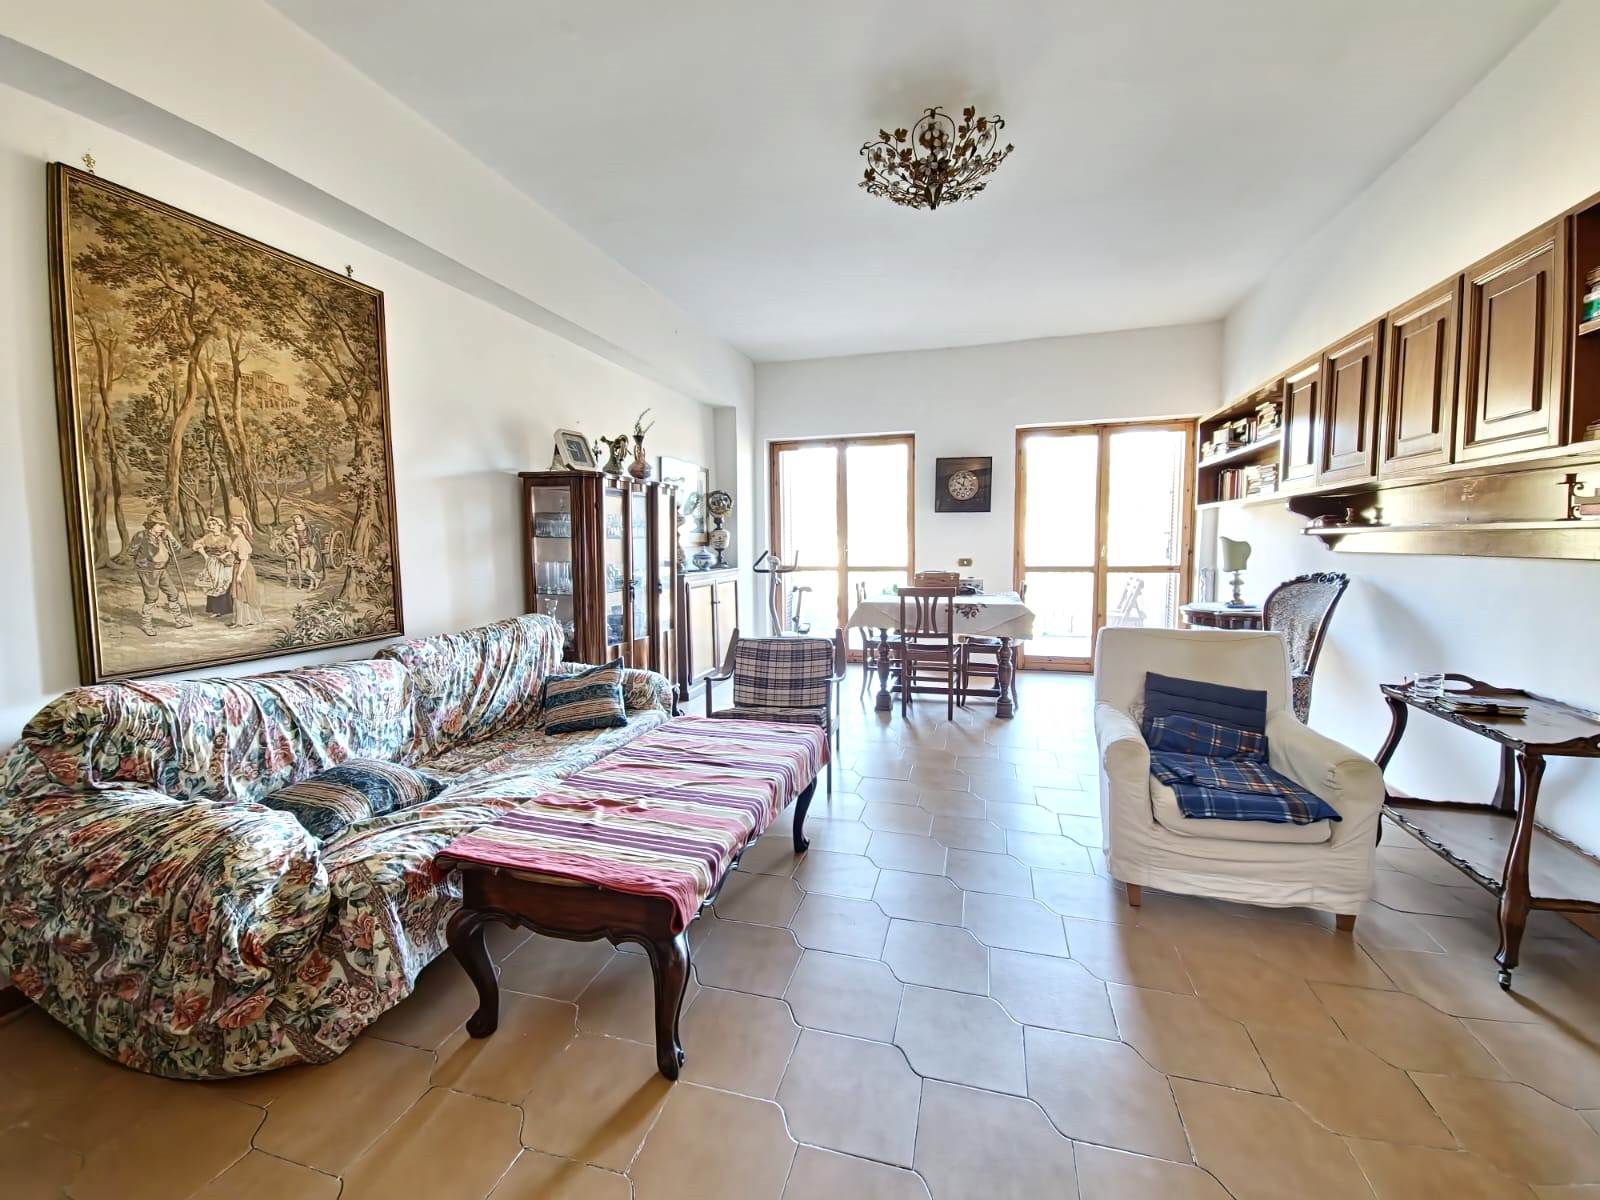 Appartamento in vendita a Ronciglione, 4 locali, prezzo € 105.000 | PortaleAgenzieImmobiliari.it